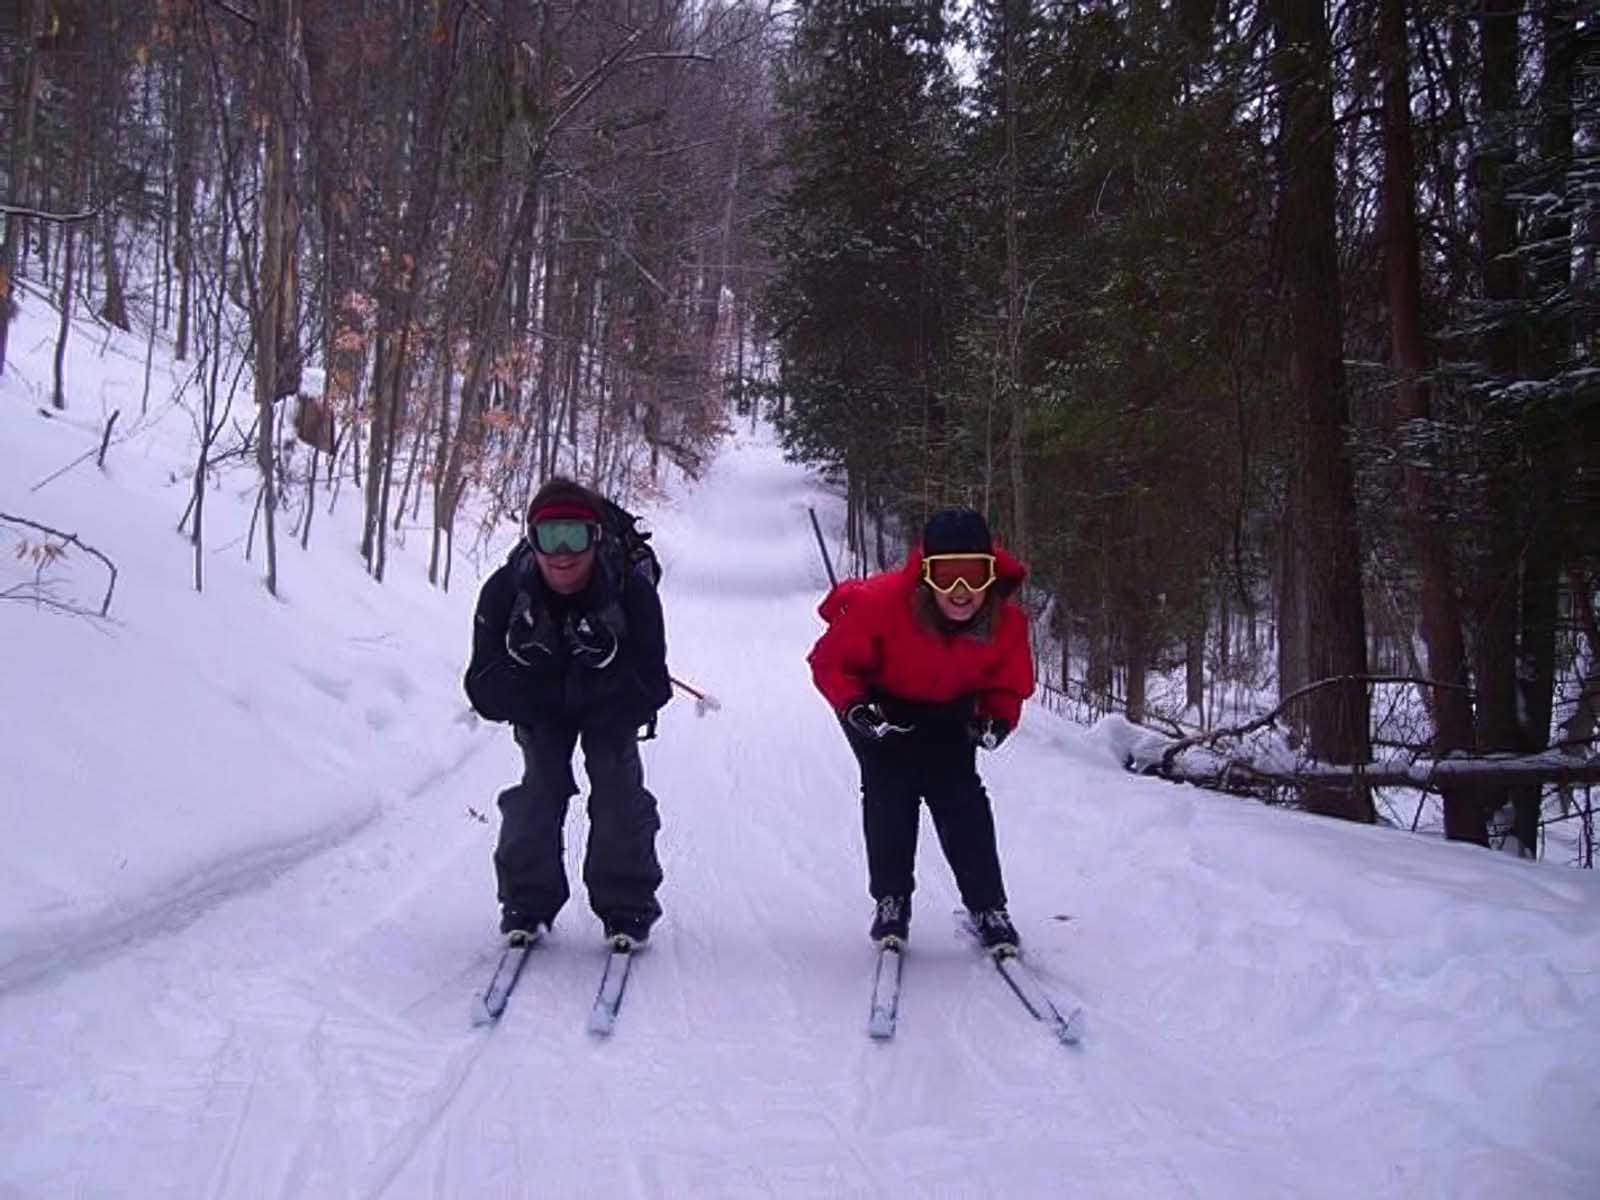 winter activities ontario cross country skiing